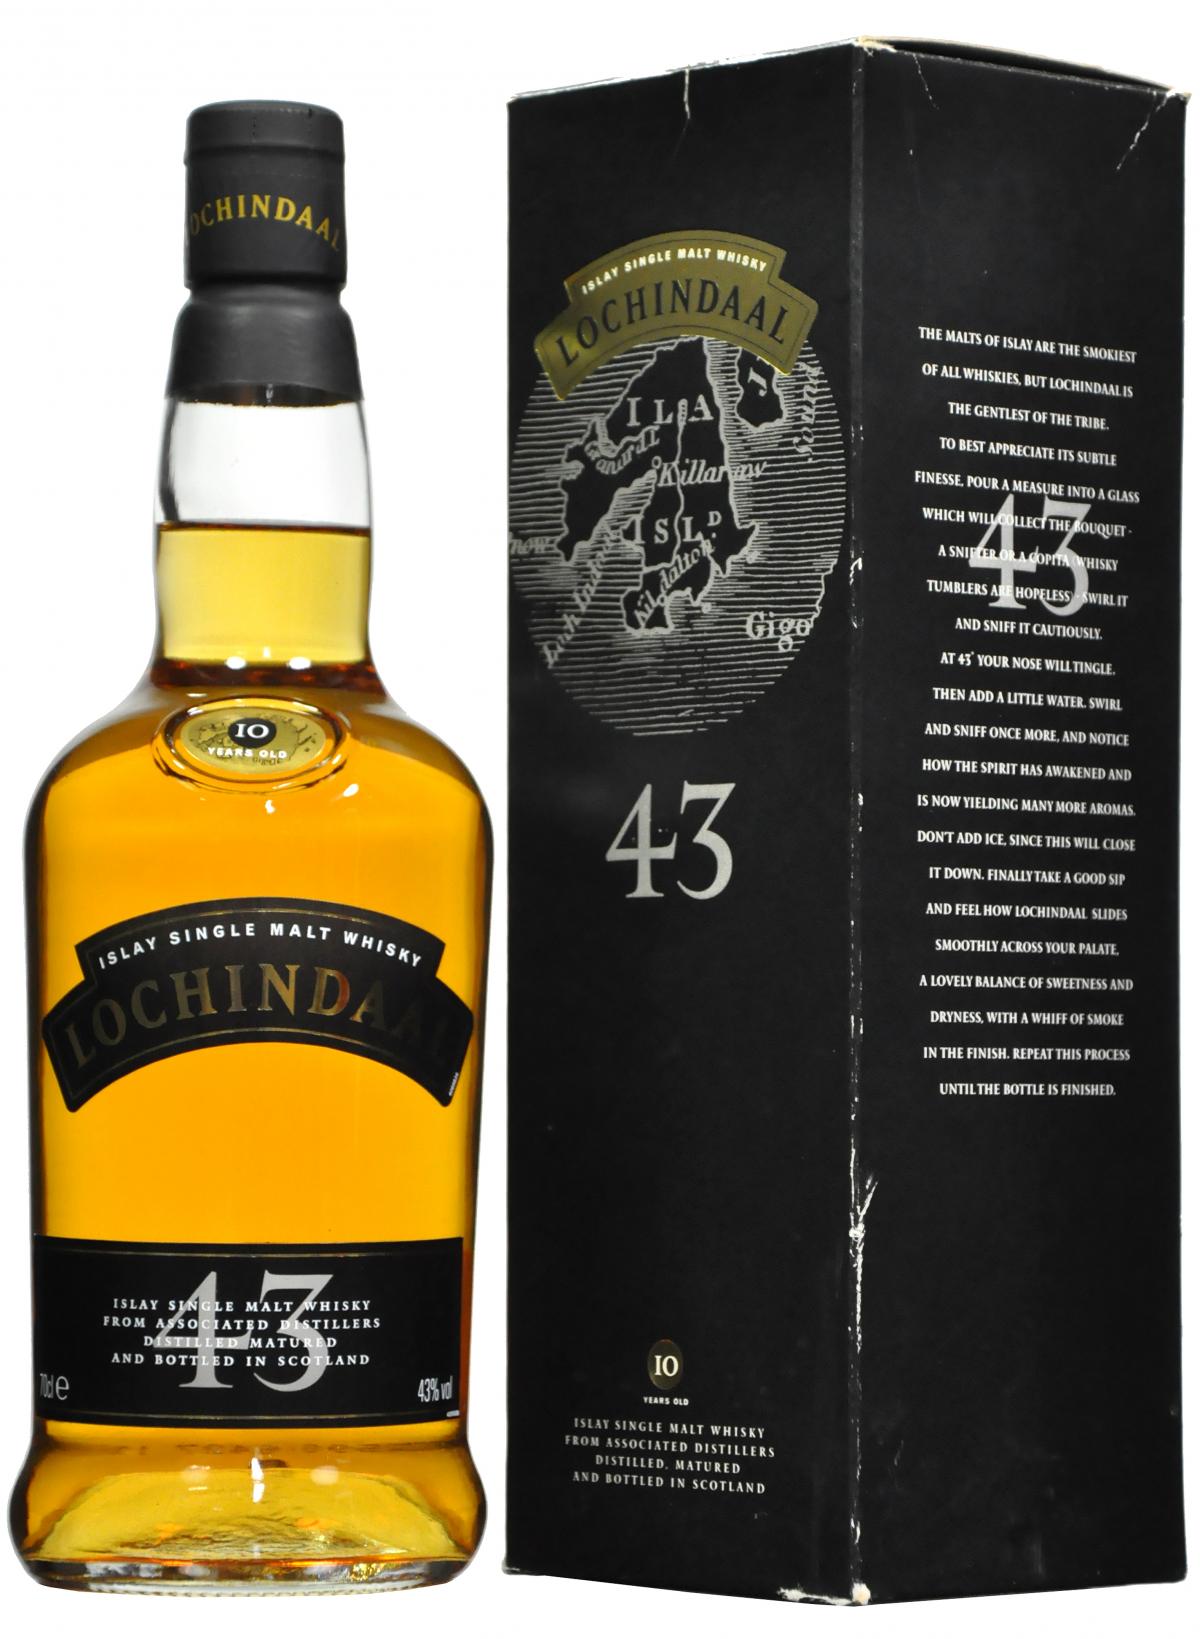 Lochindaal 43 Islay Single Malt Whisky